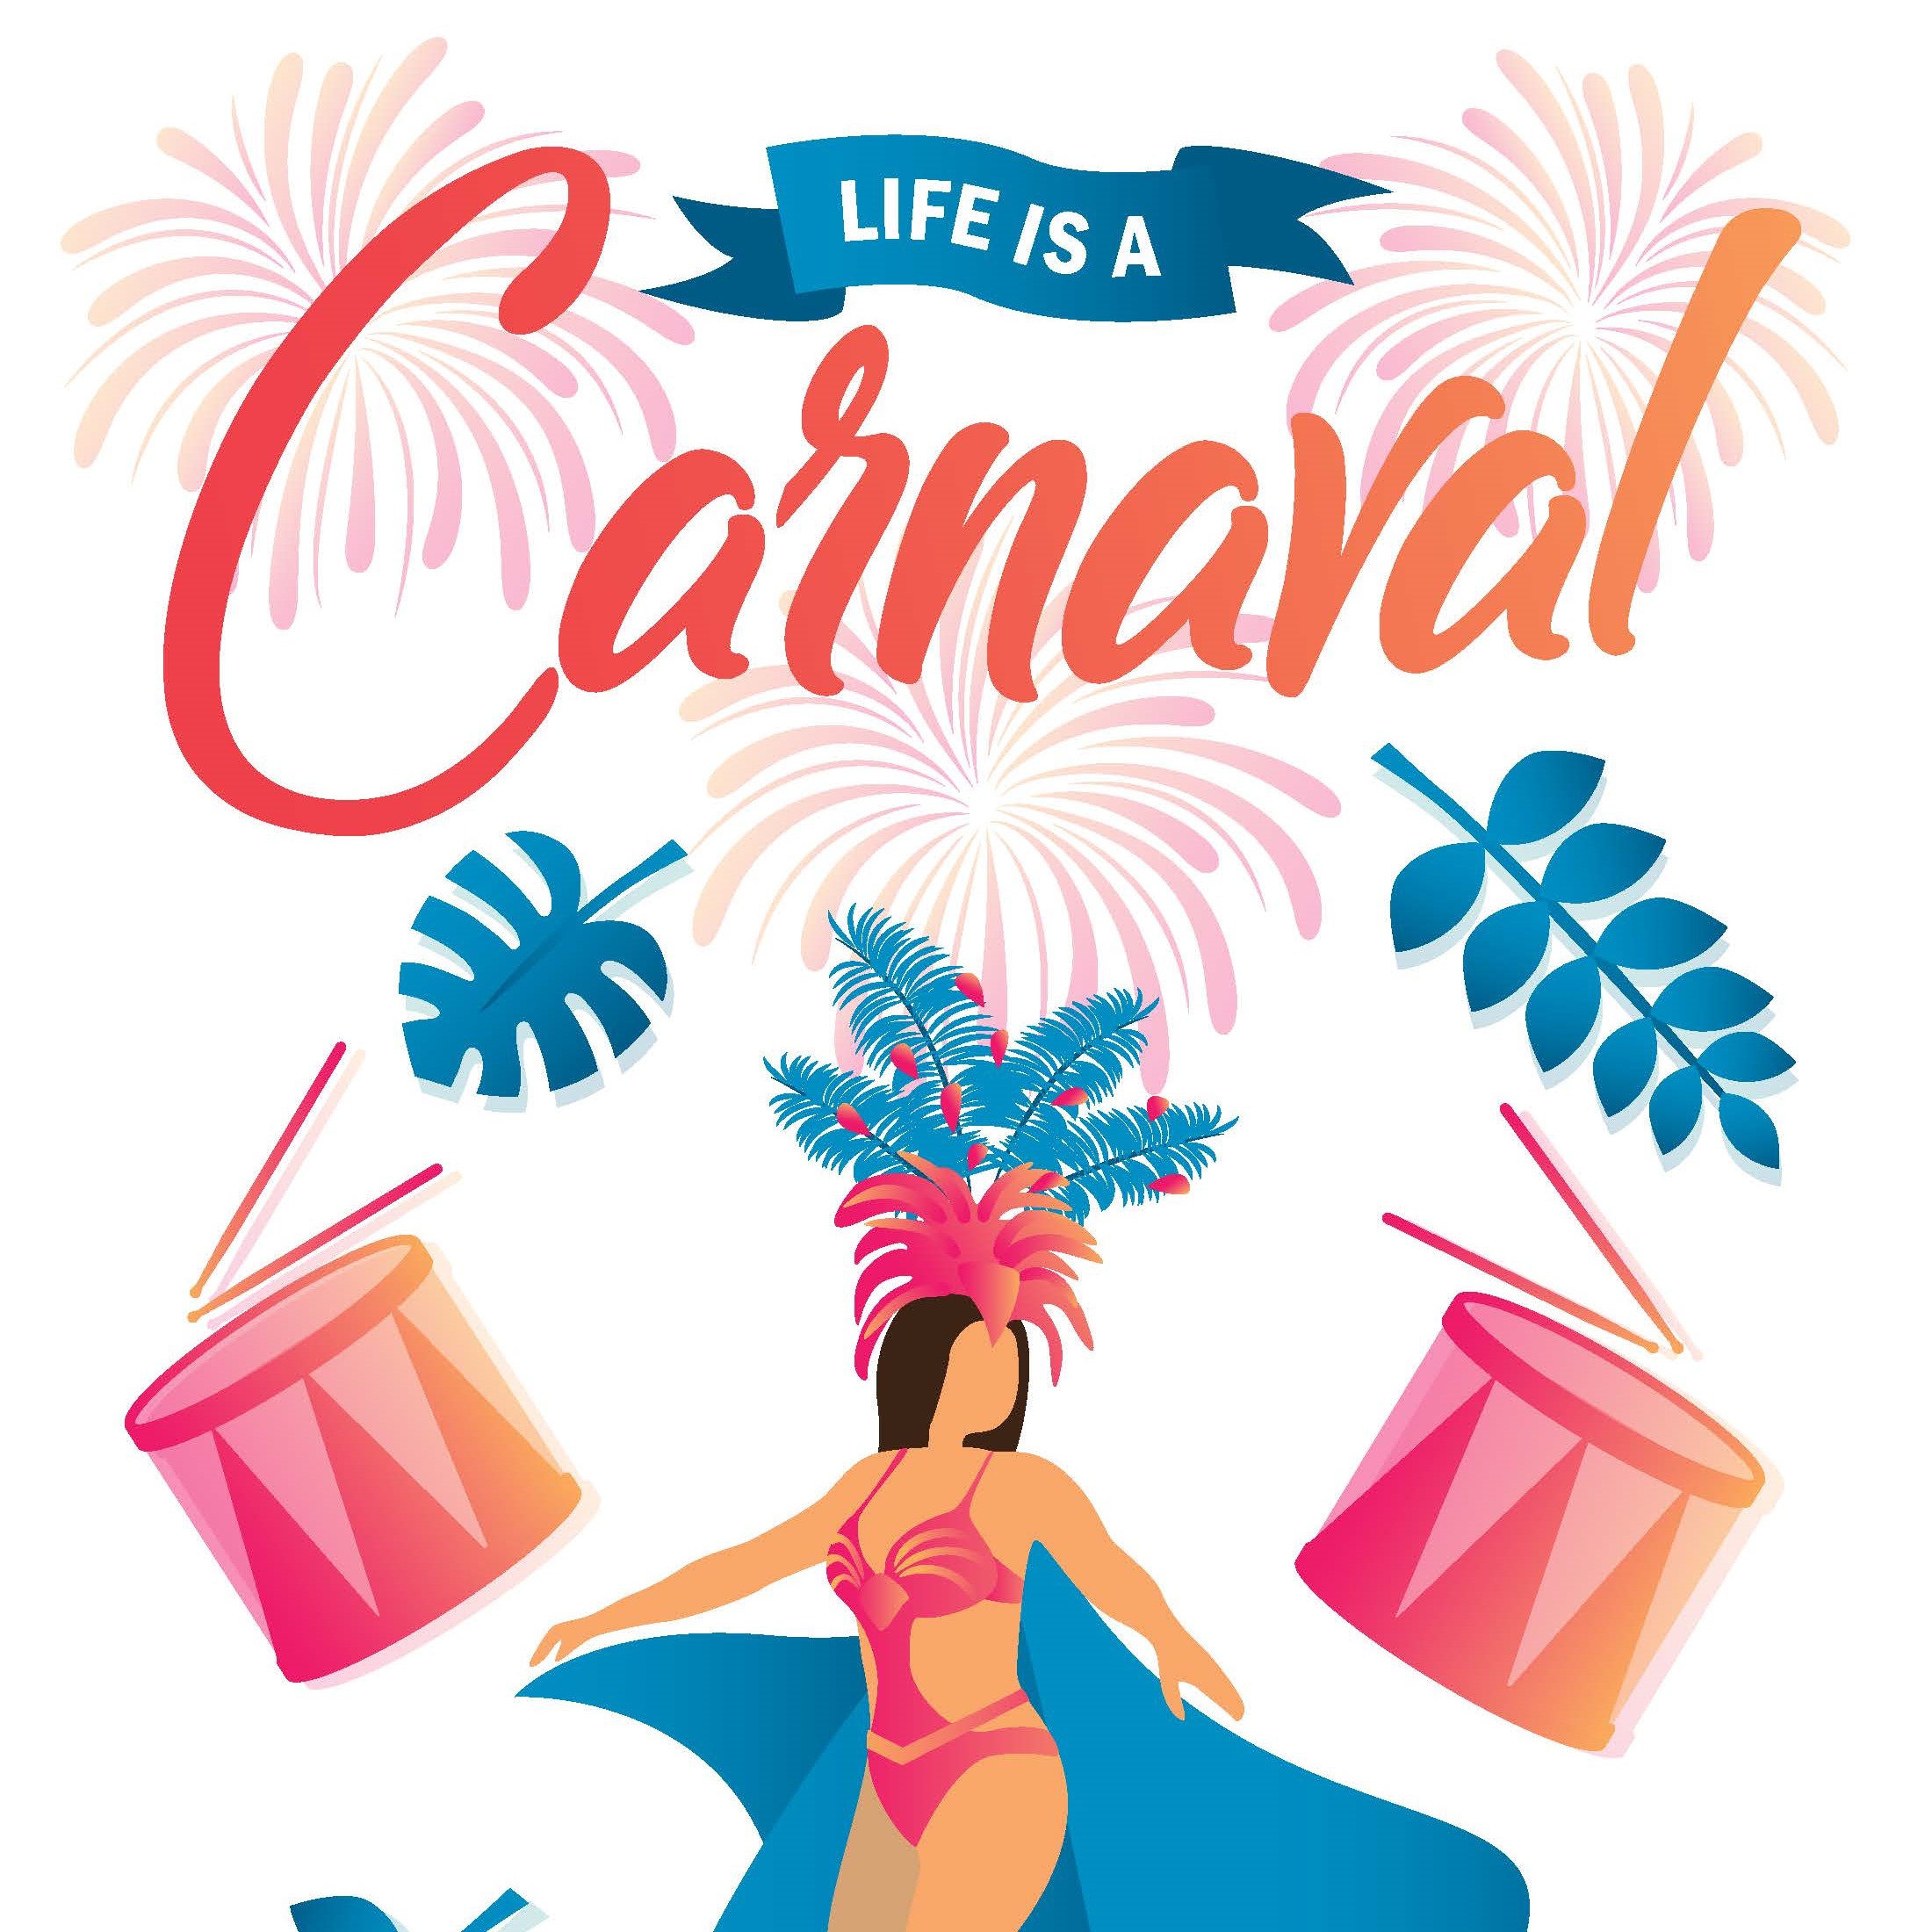 carnival poster